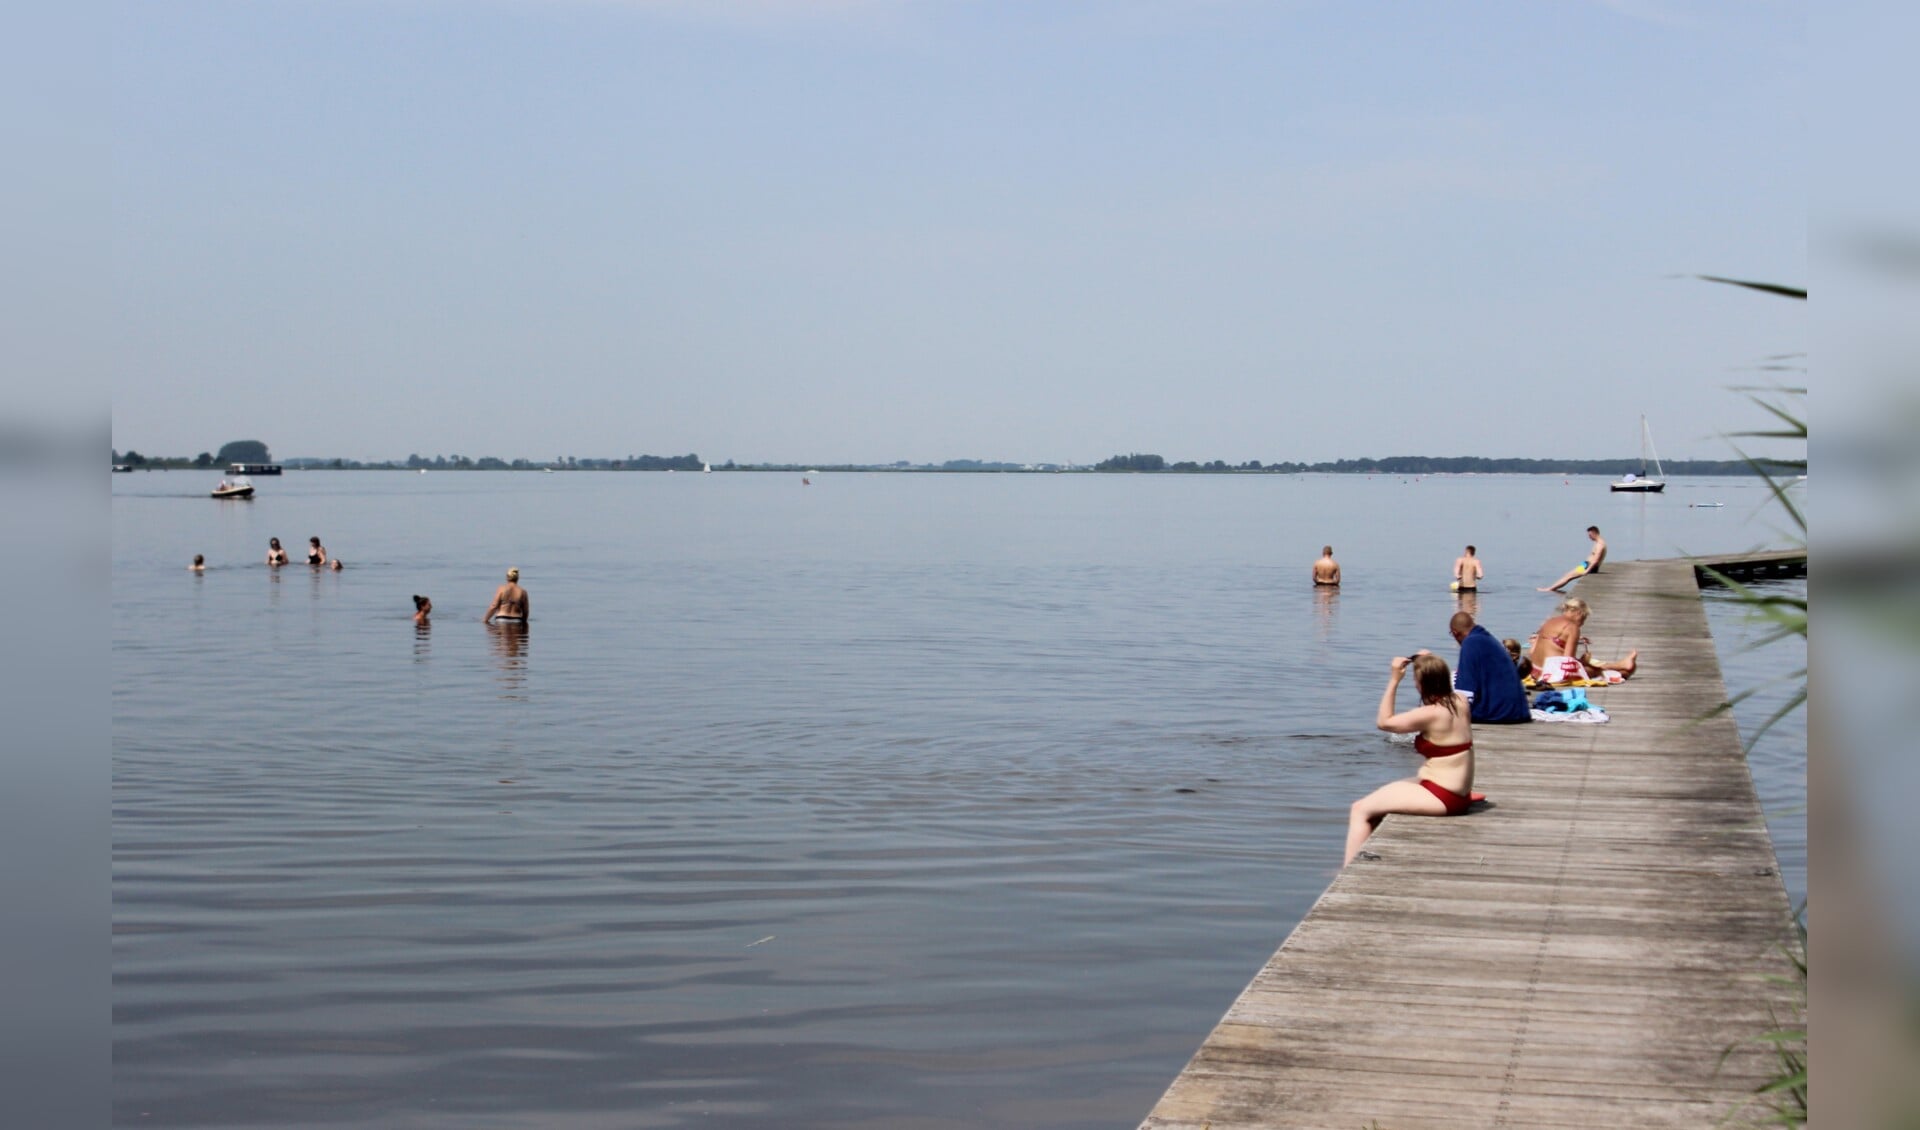 Zwemmen in zwemplassen kan weer met ingang van 1 mei, zoals hier bij het Zuidlaardermeer.